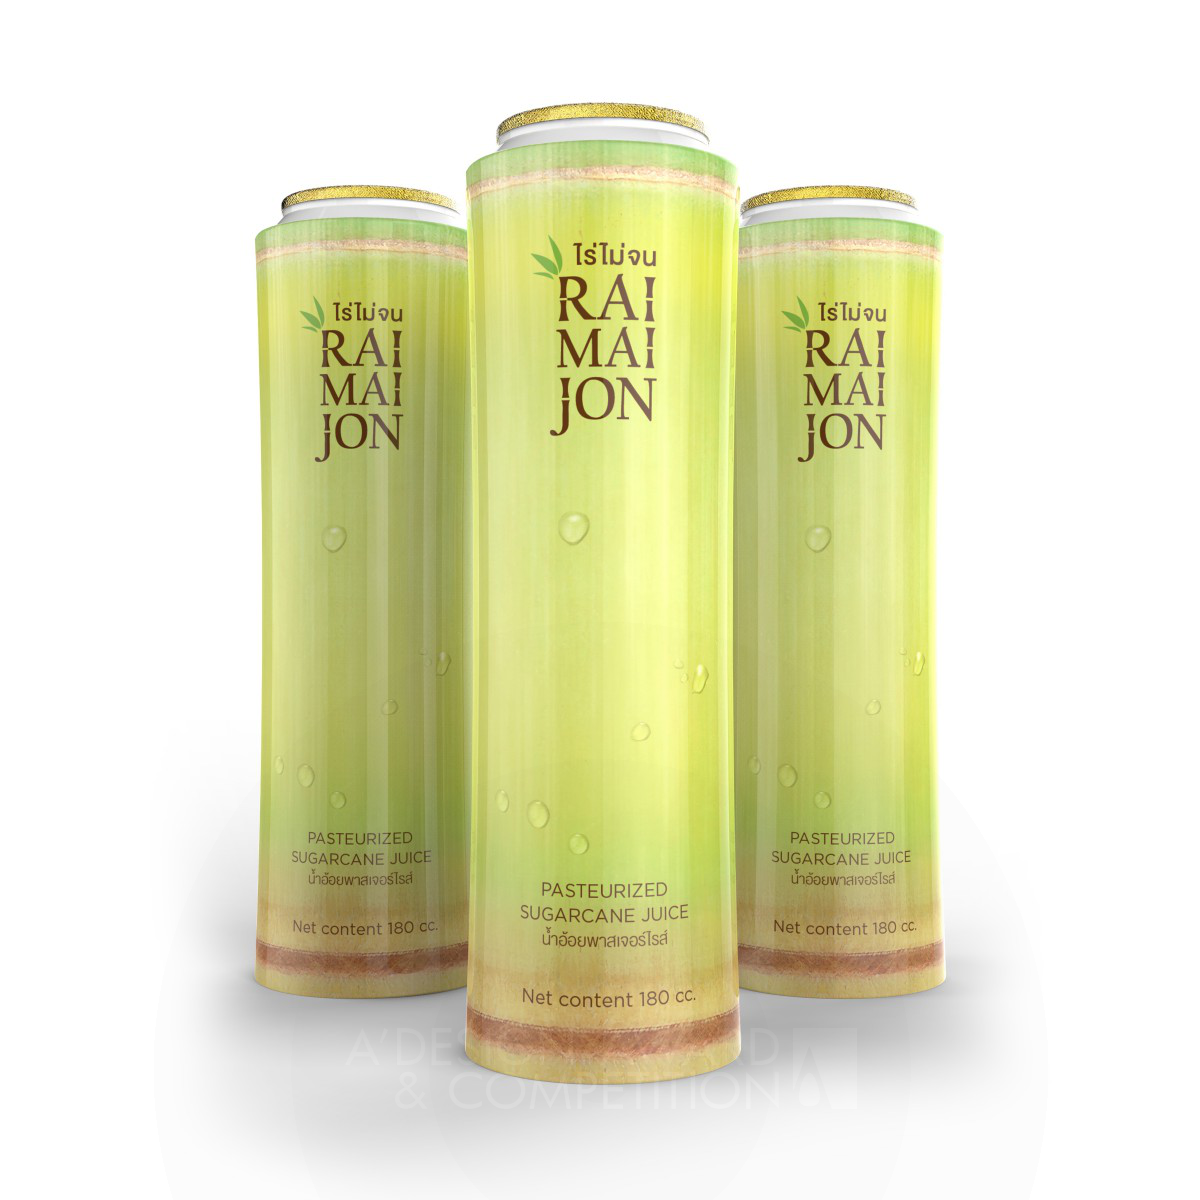 Raimaijon Pasteurized Sugarcane Juice <b>Packaging Design